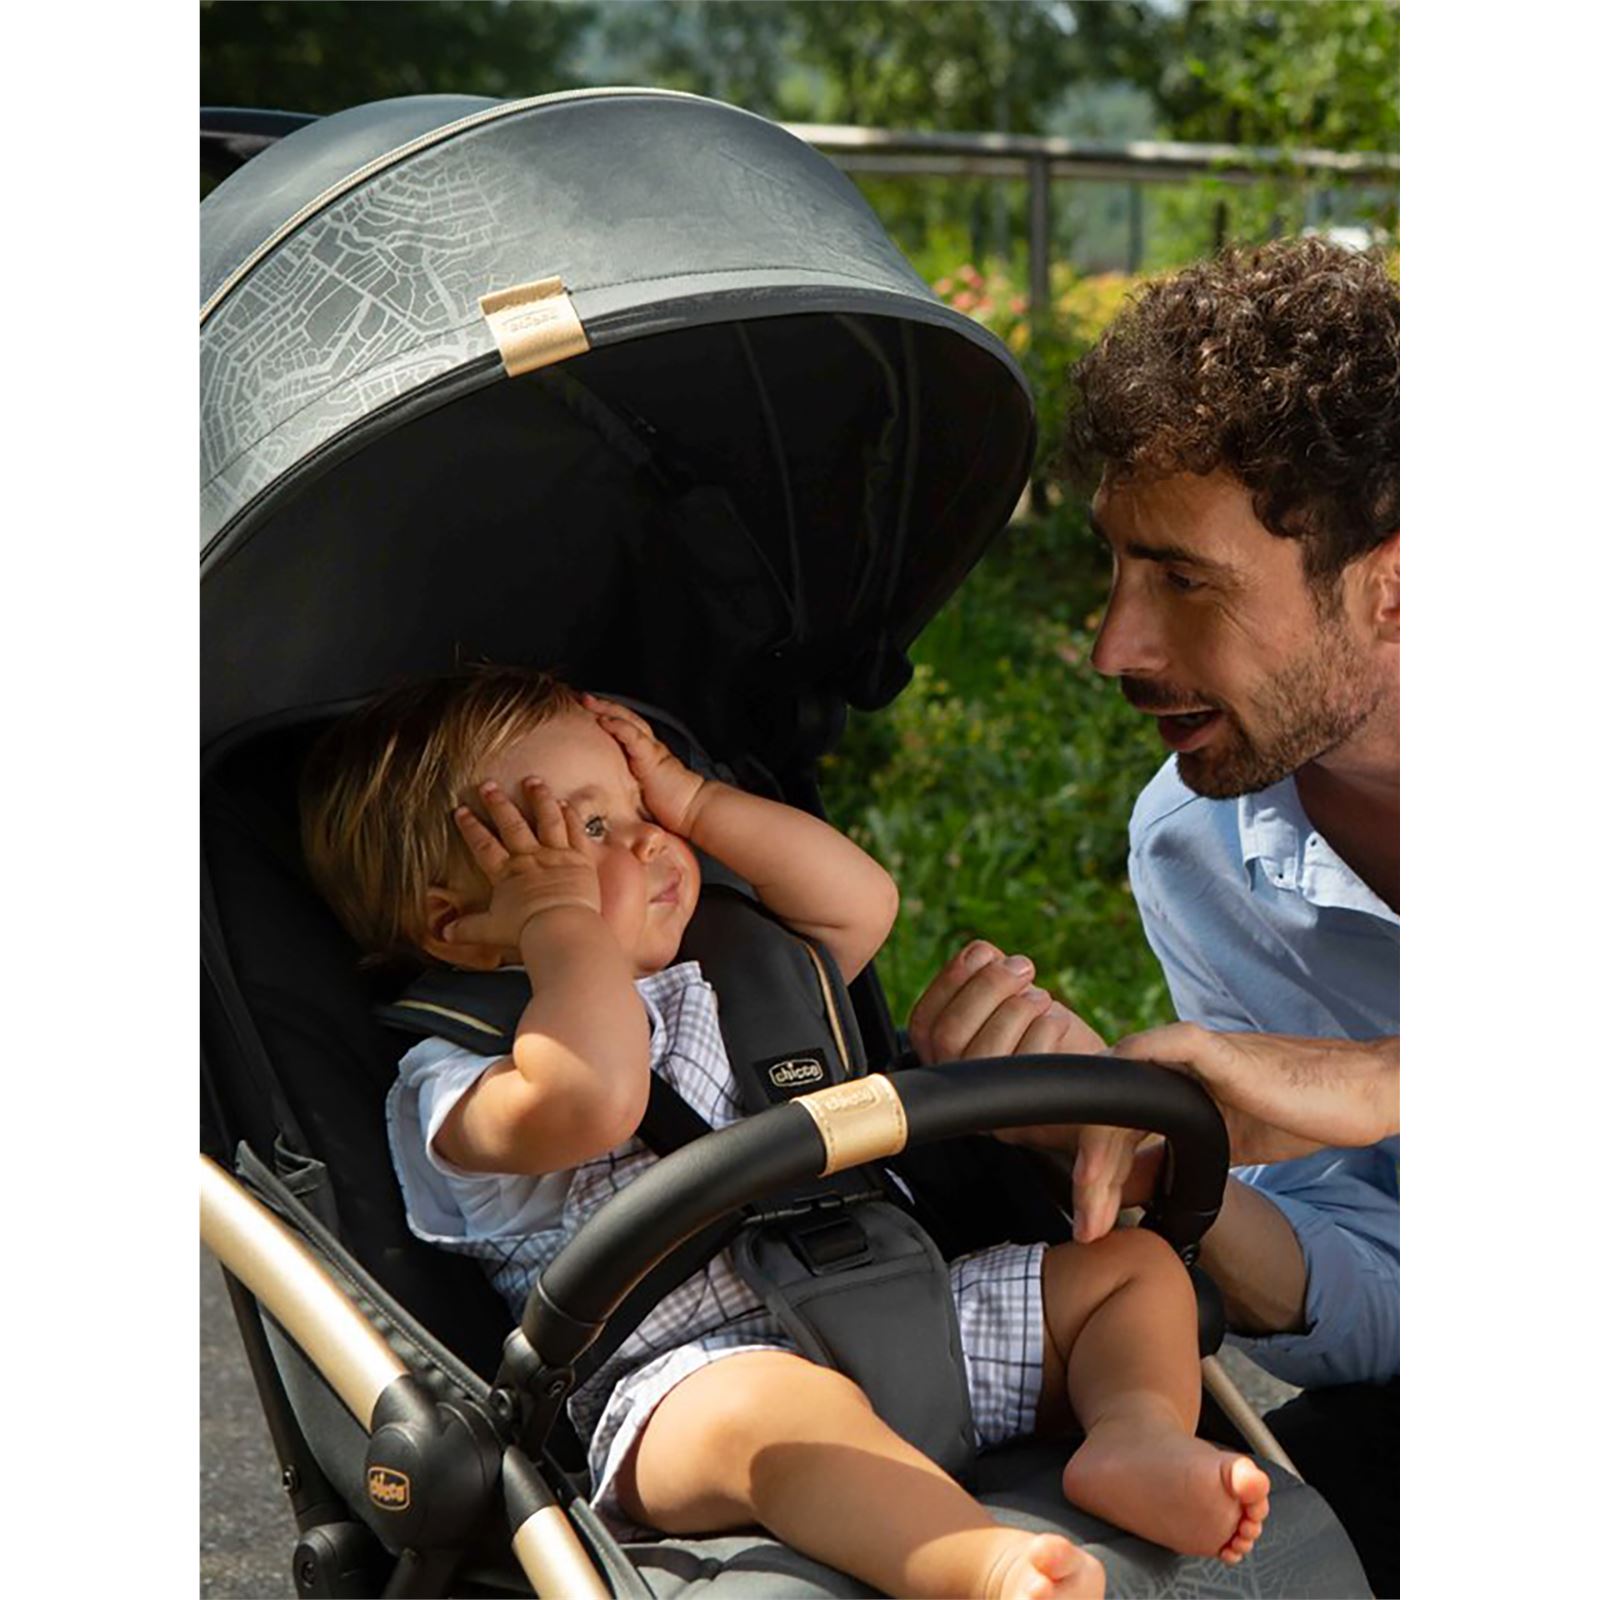 Chicco Goody Plus Stroller Bebek Arabası Füme